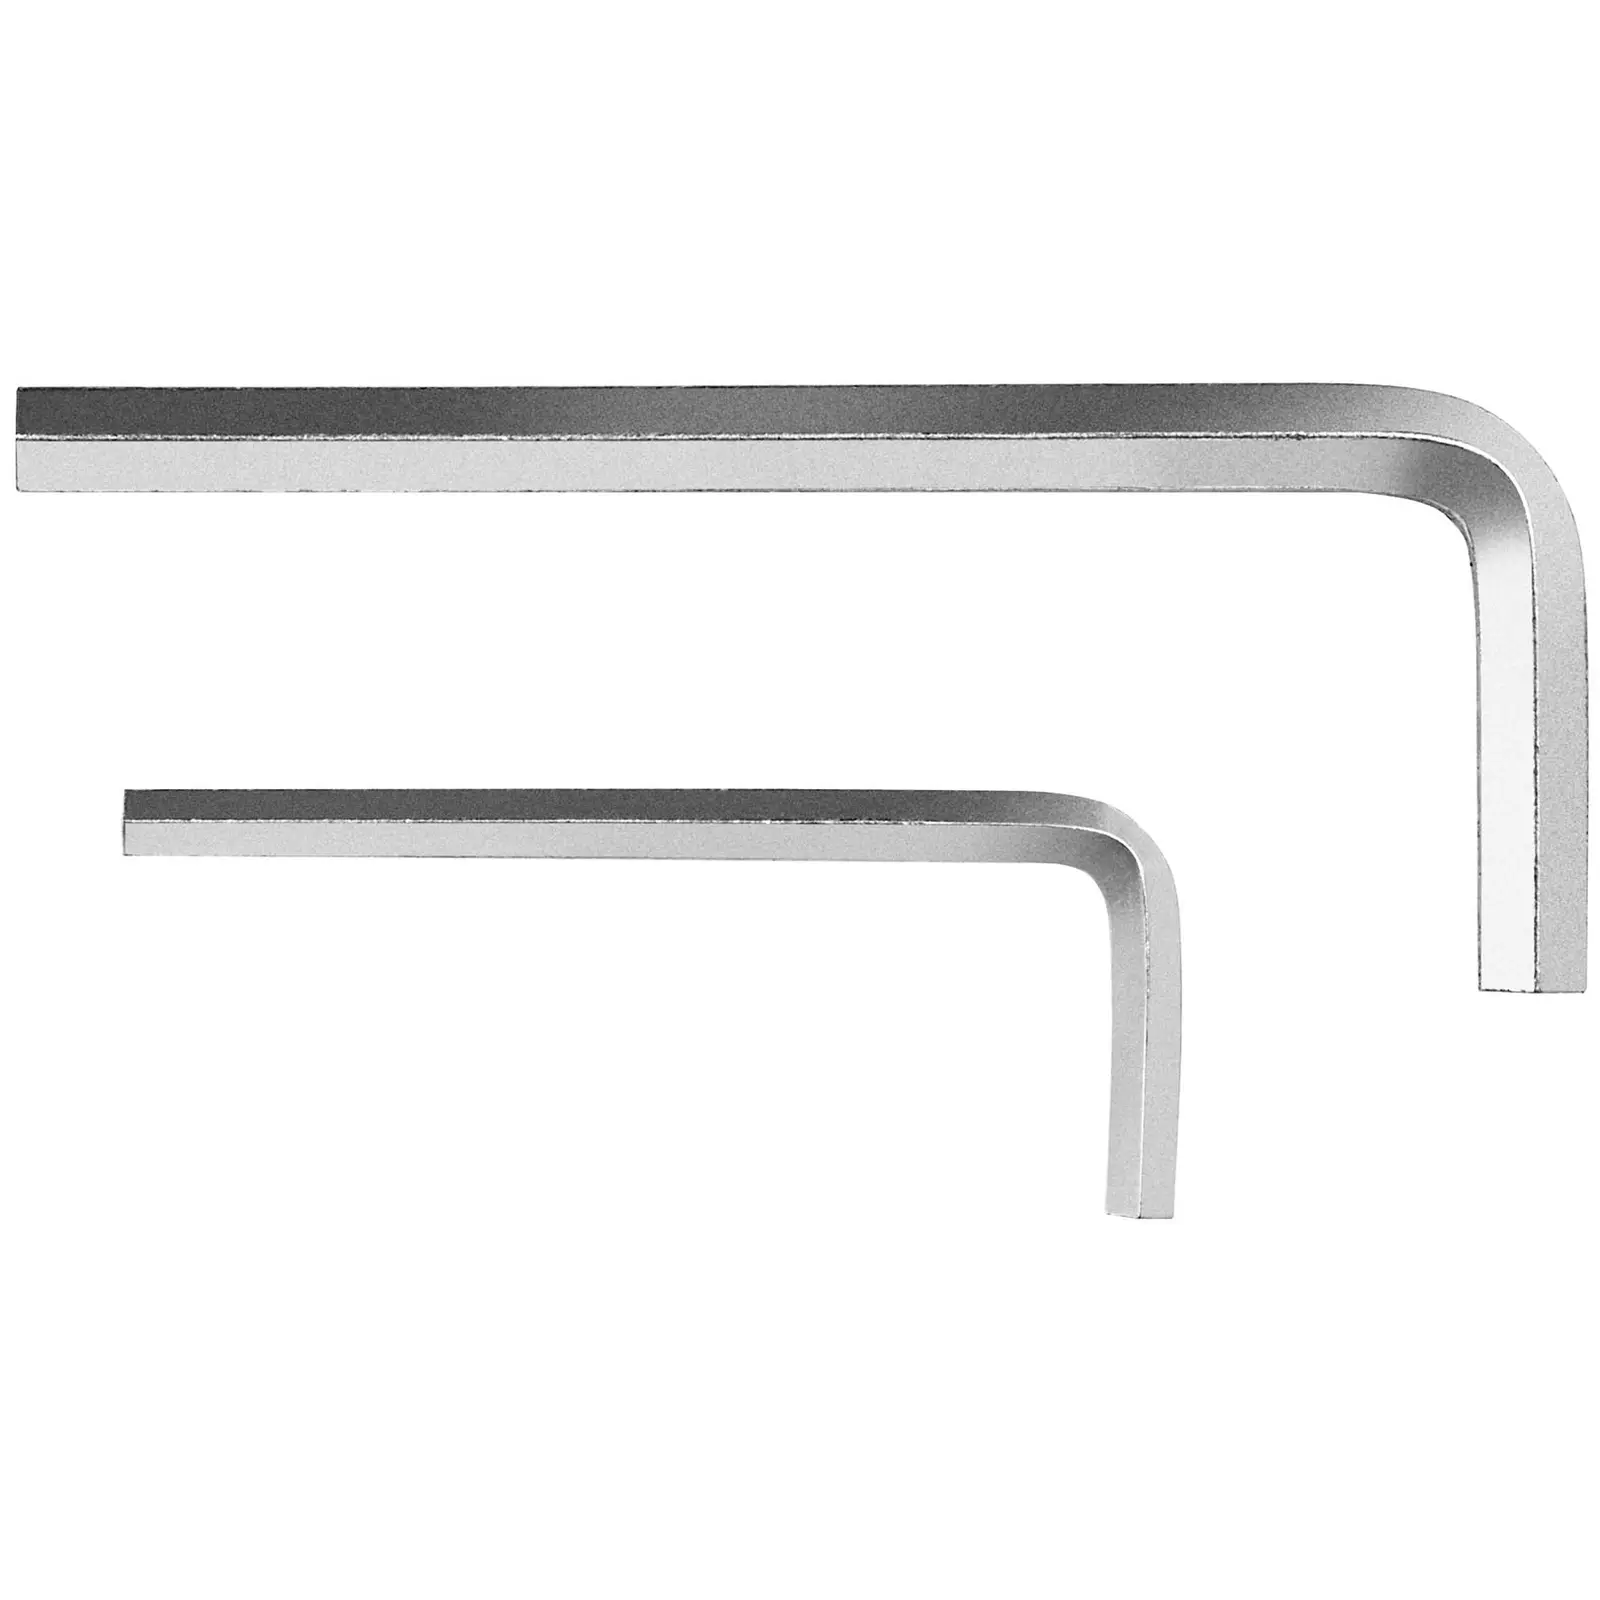 Cizalla de mesa - Manual - Soporte - Longitud de corte: 1500 mm - Grosor de material hasta 1,5 mm 